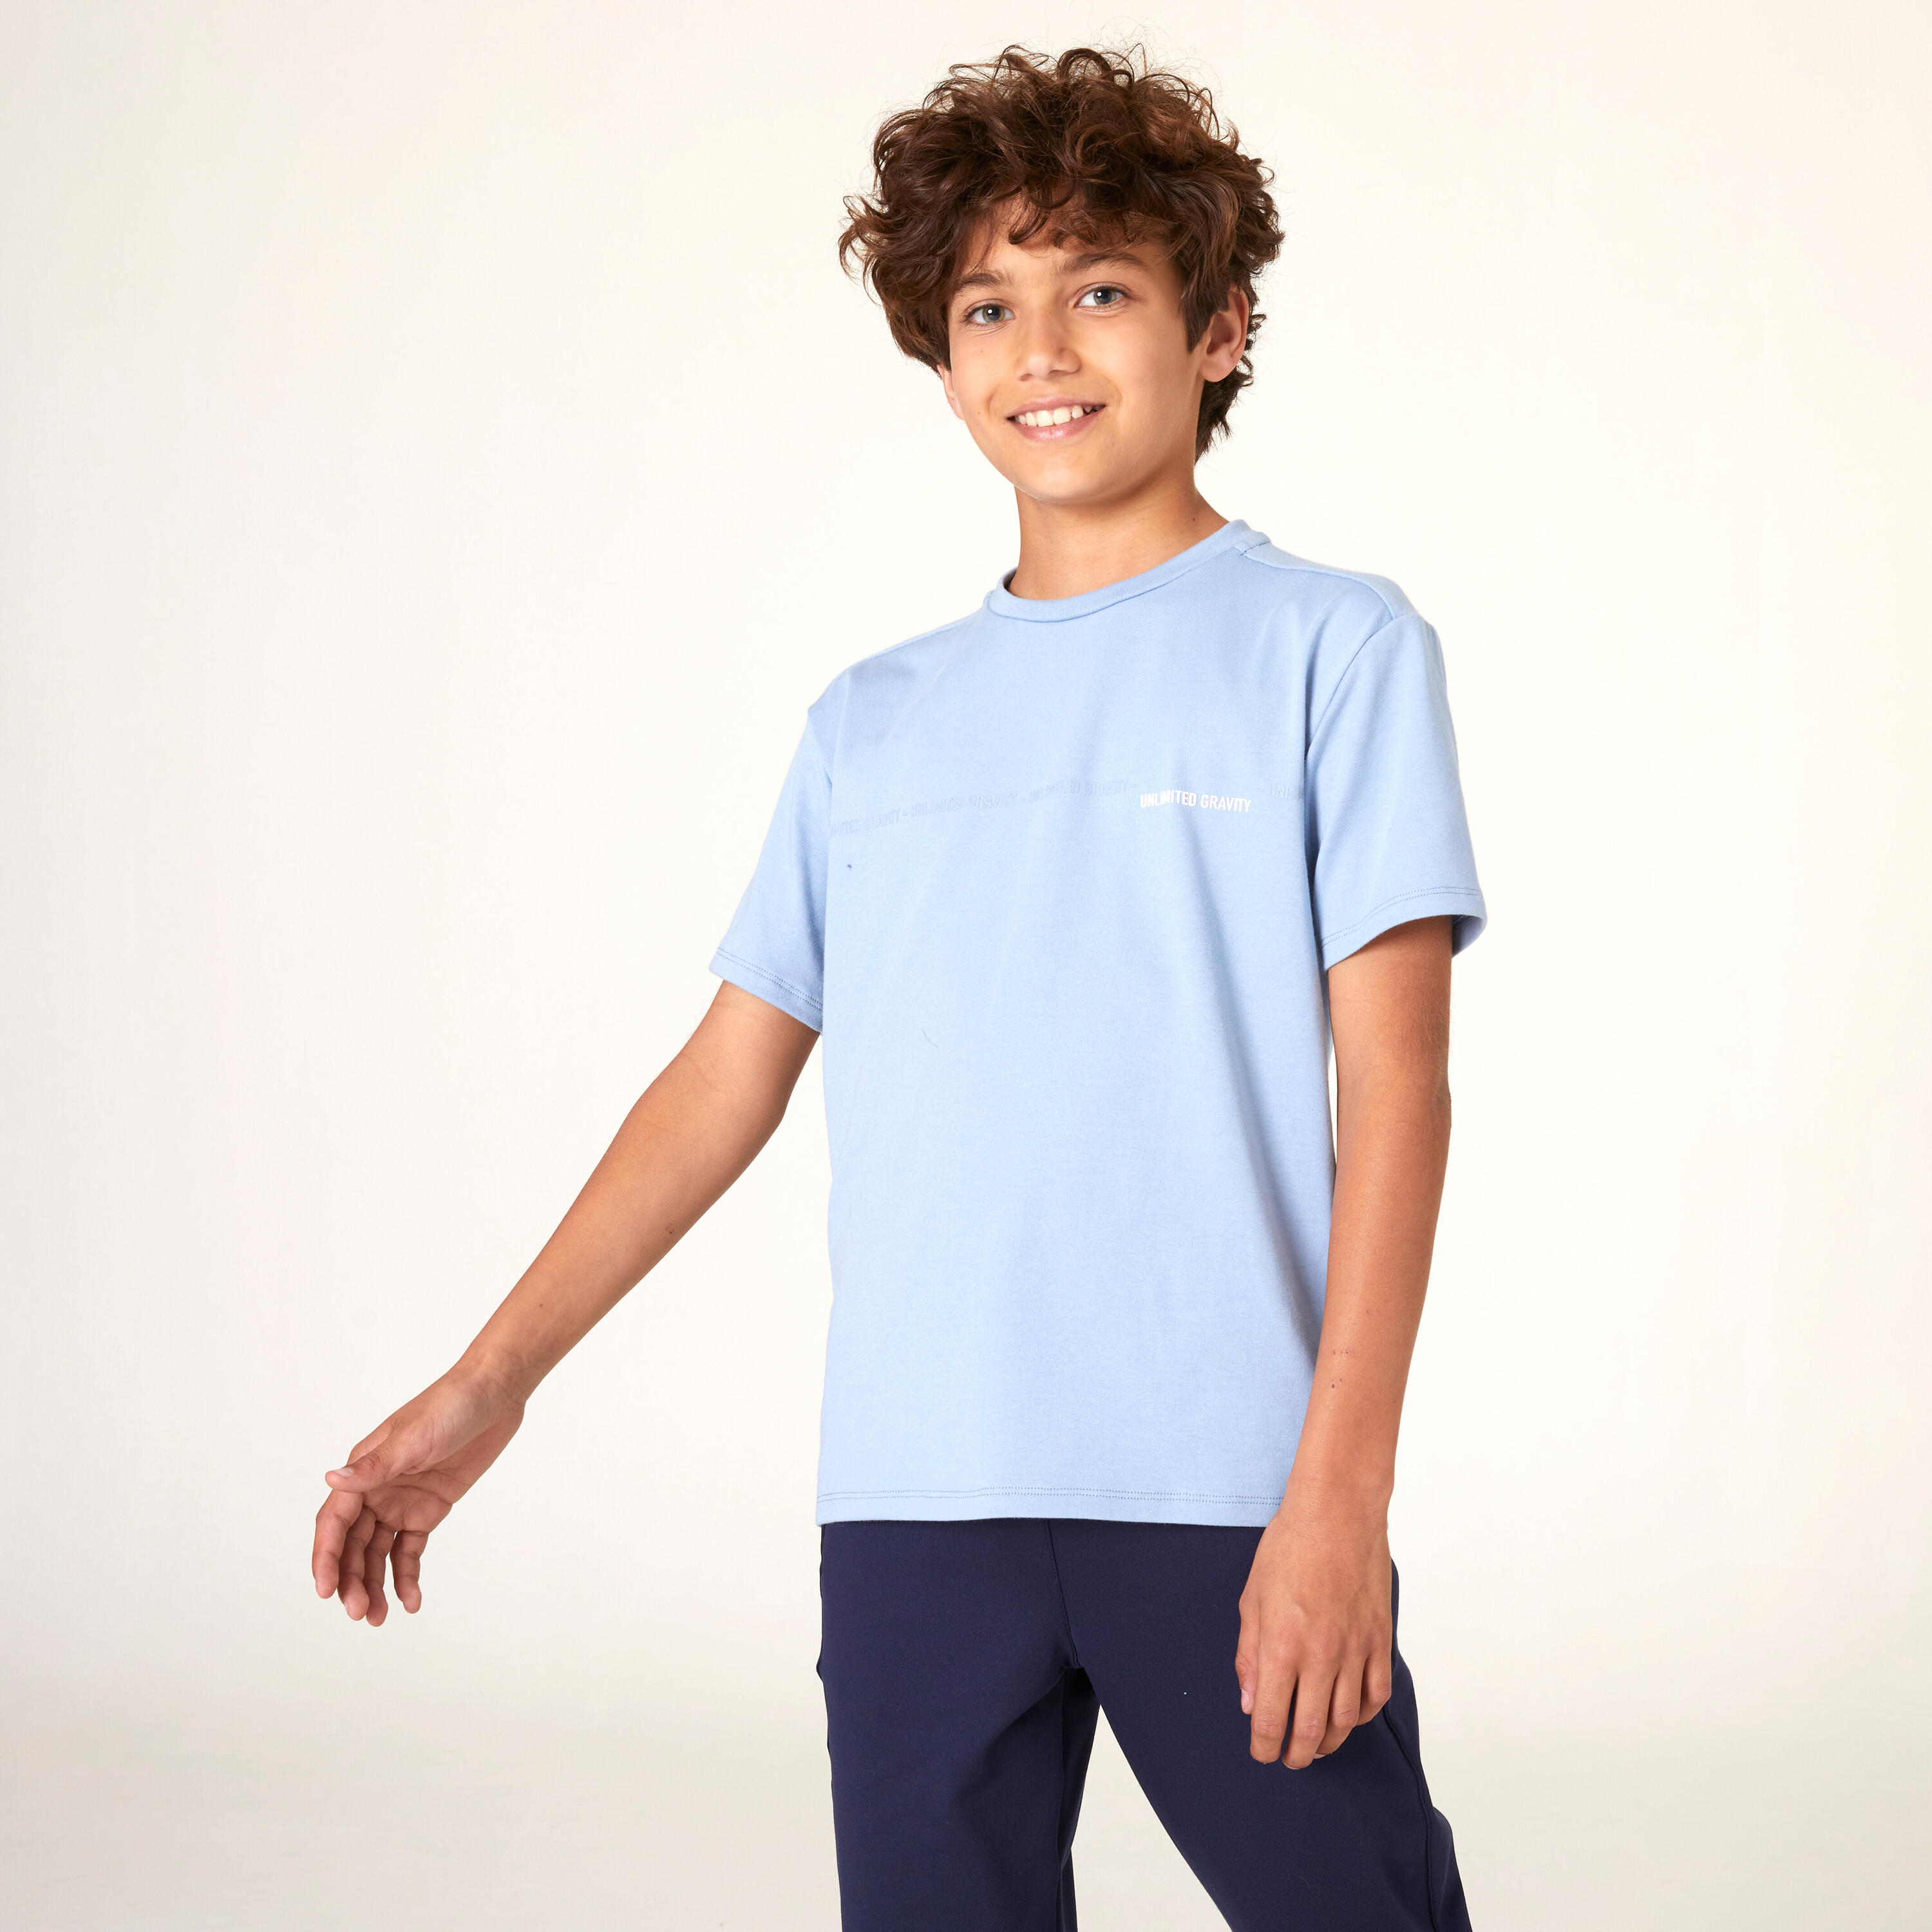 Kids' Breathable Cotton T-Shirt 500 - Blue Jeans 1/4